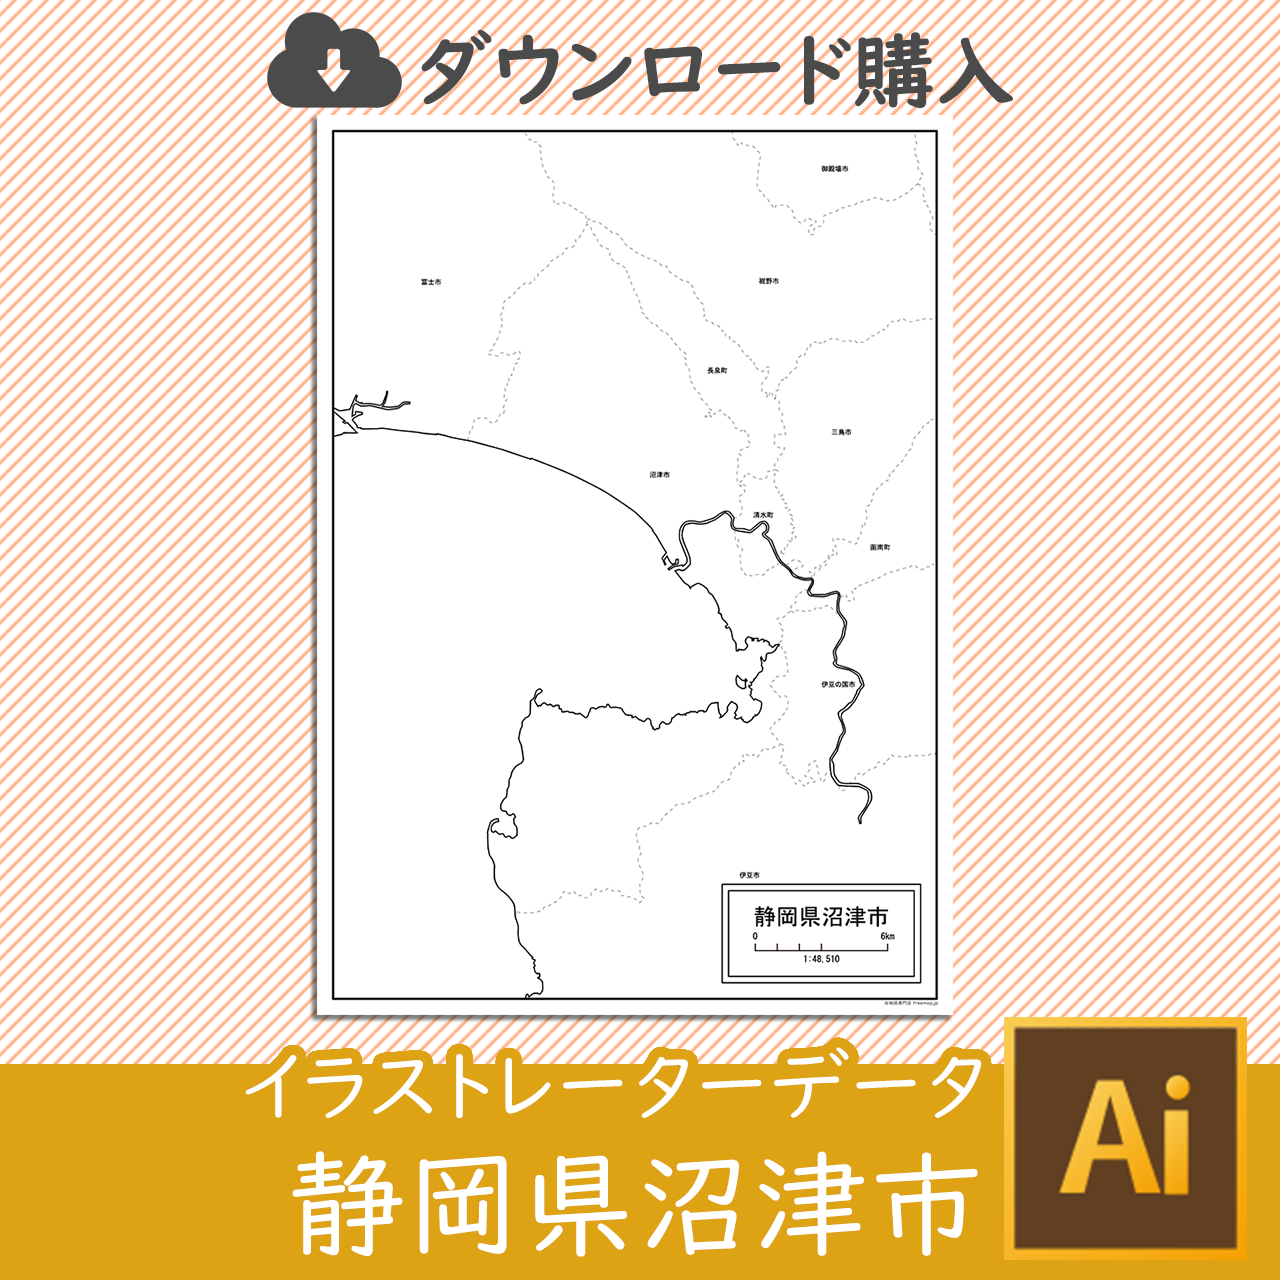 沼津市のaiデータのサムネイル画像